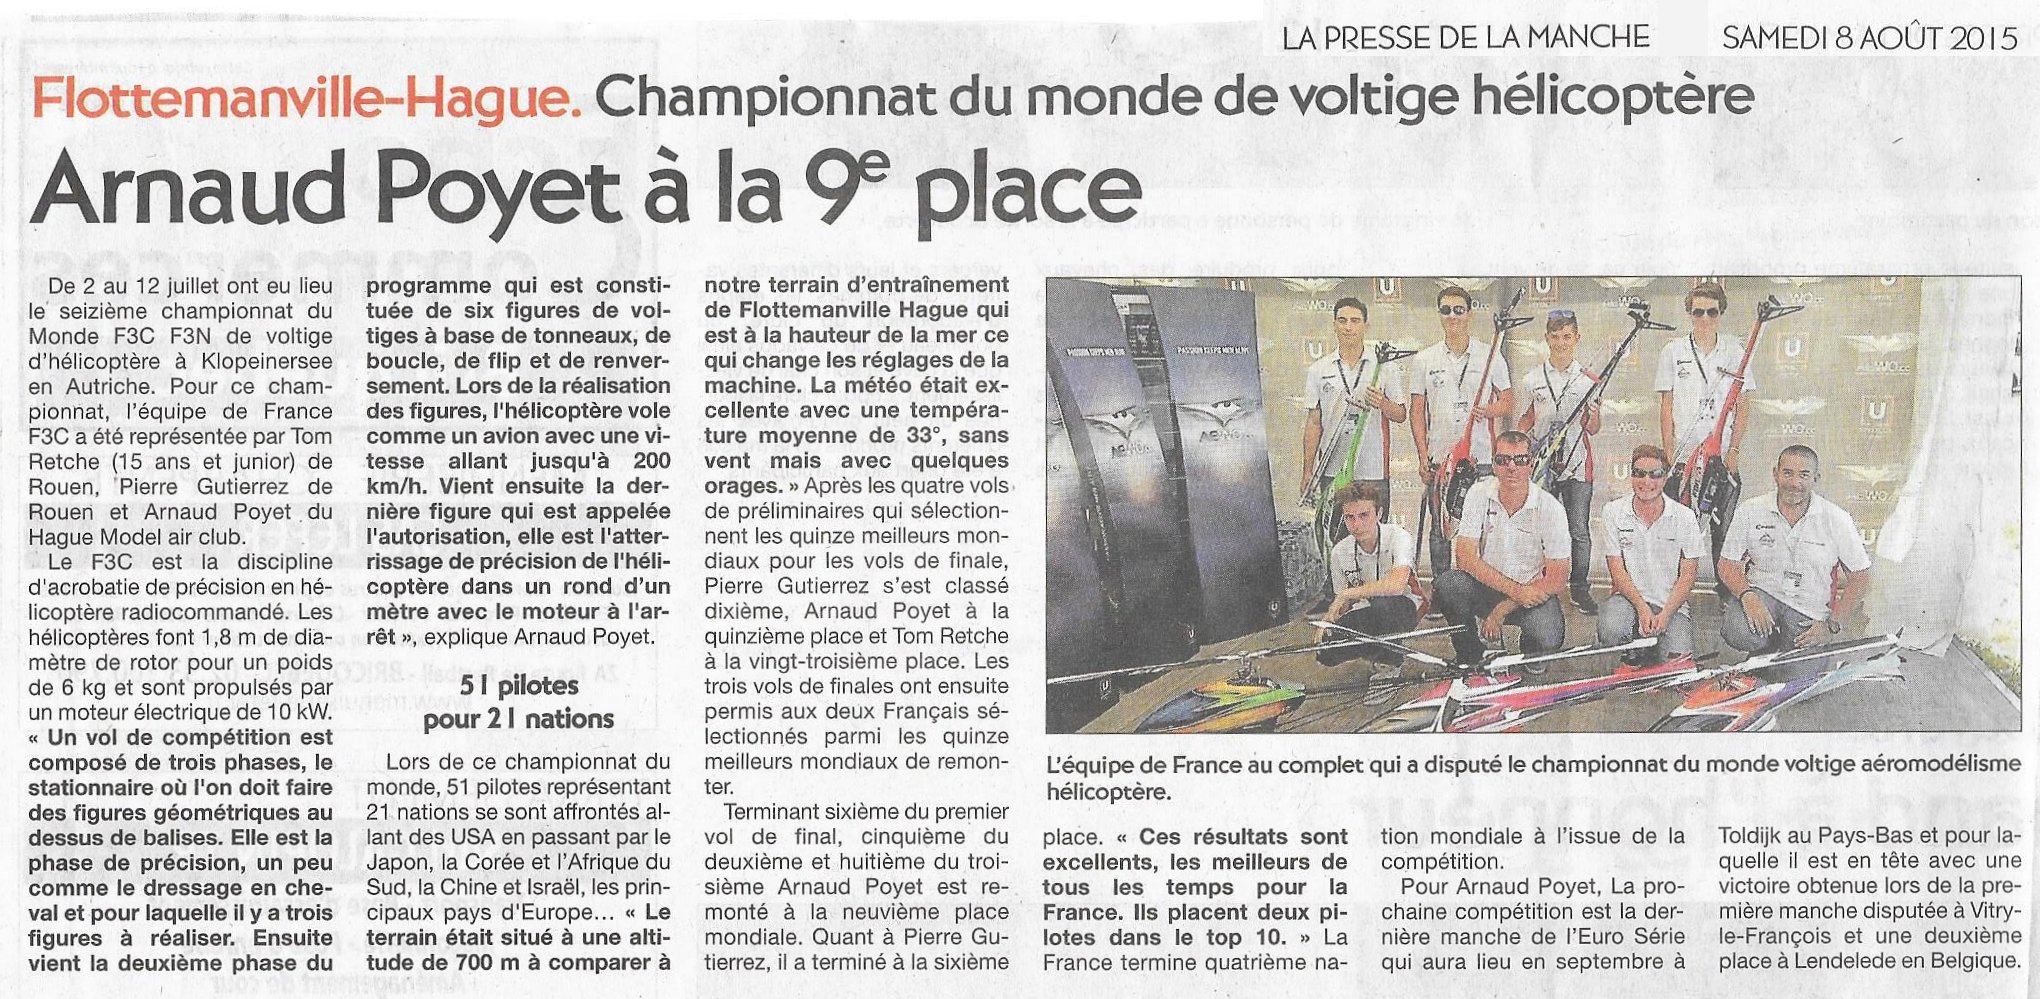 Presse de la Manche 08/08/2015 – Arnaud Poyet à la 9° place